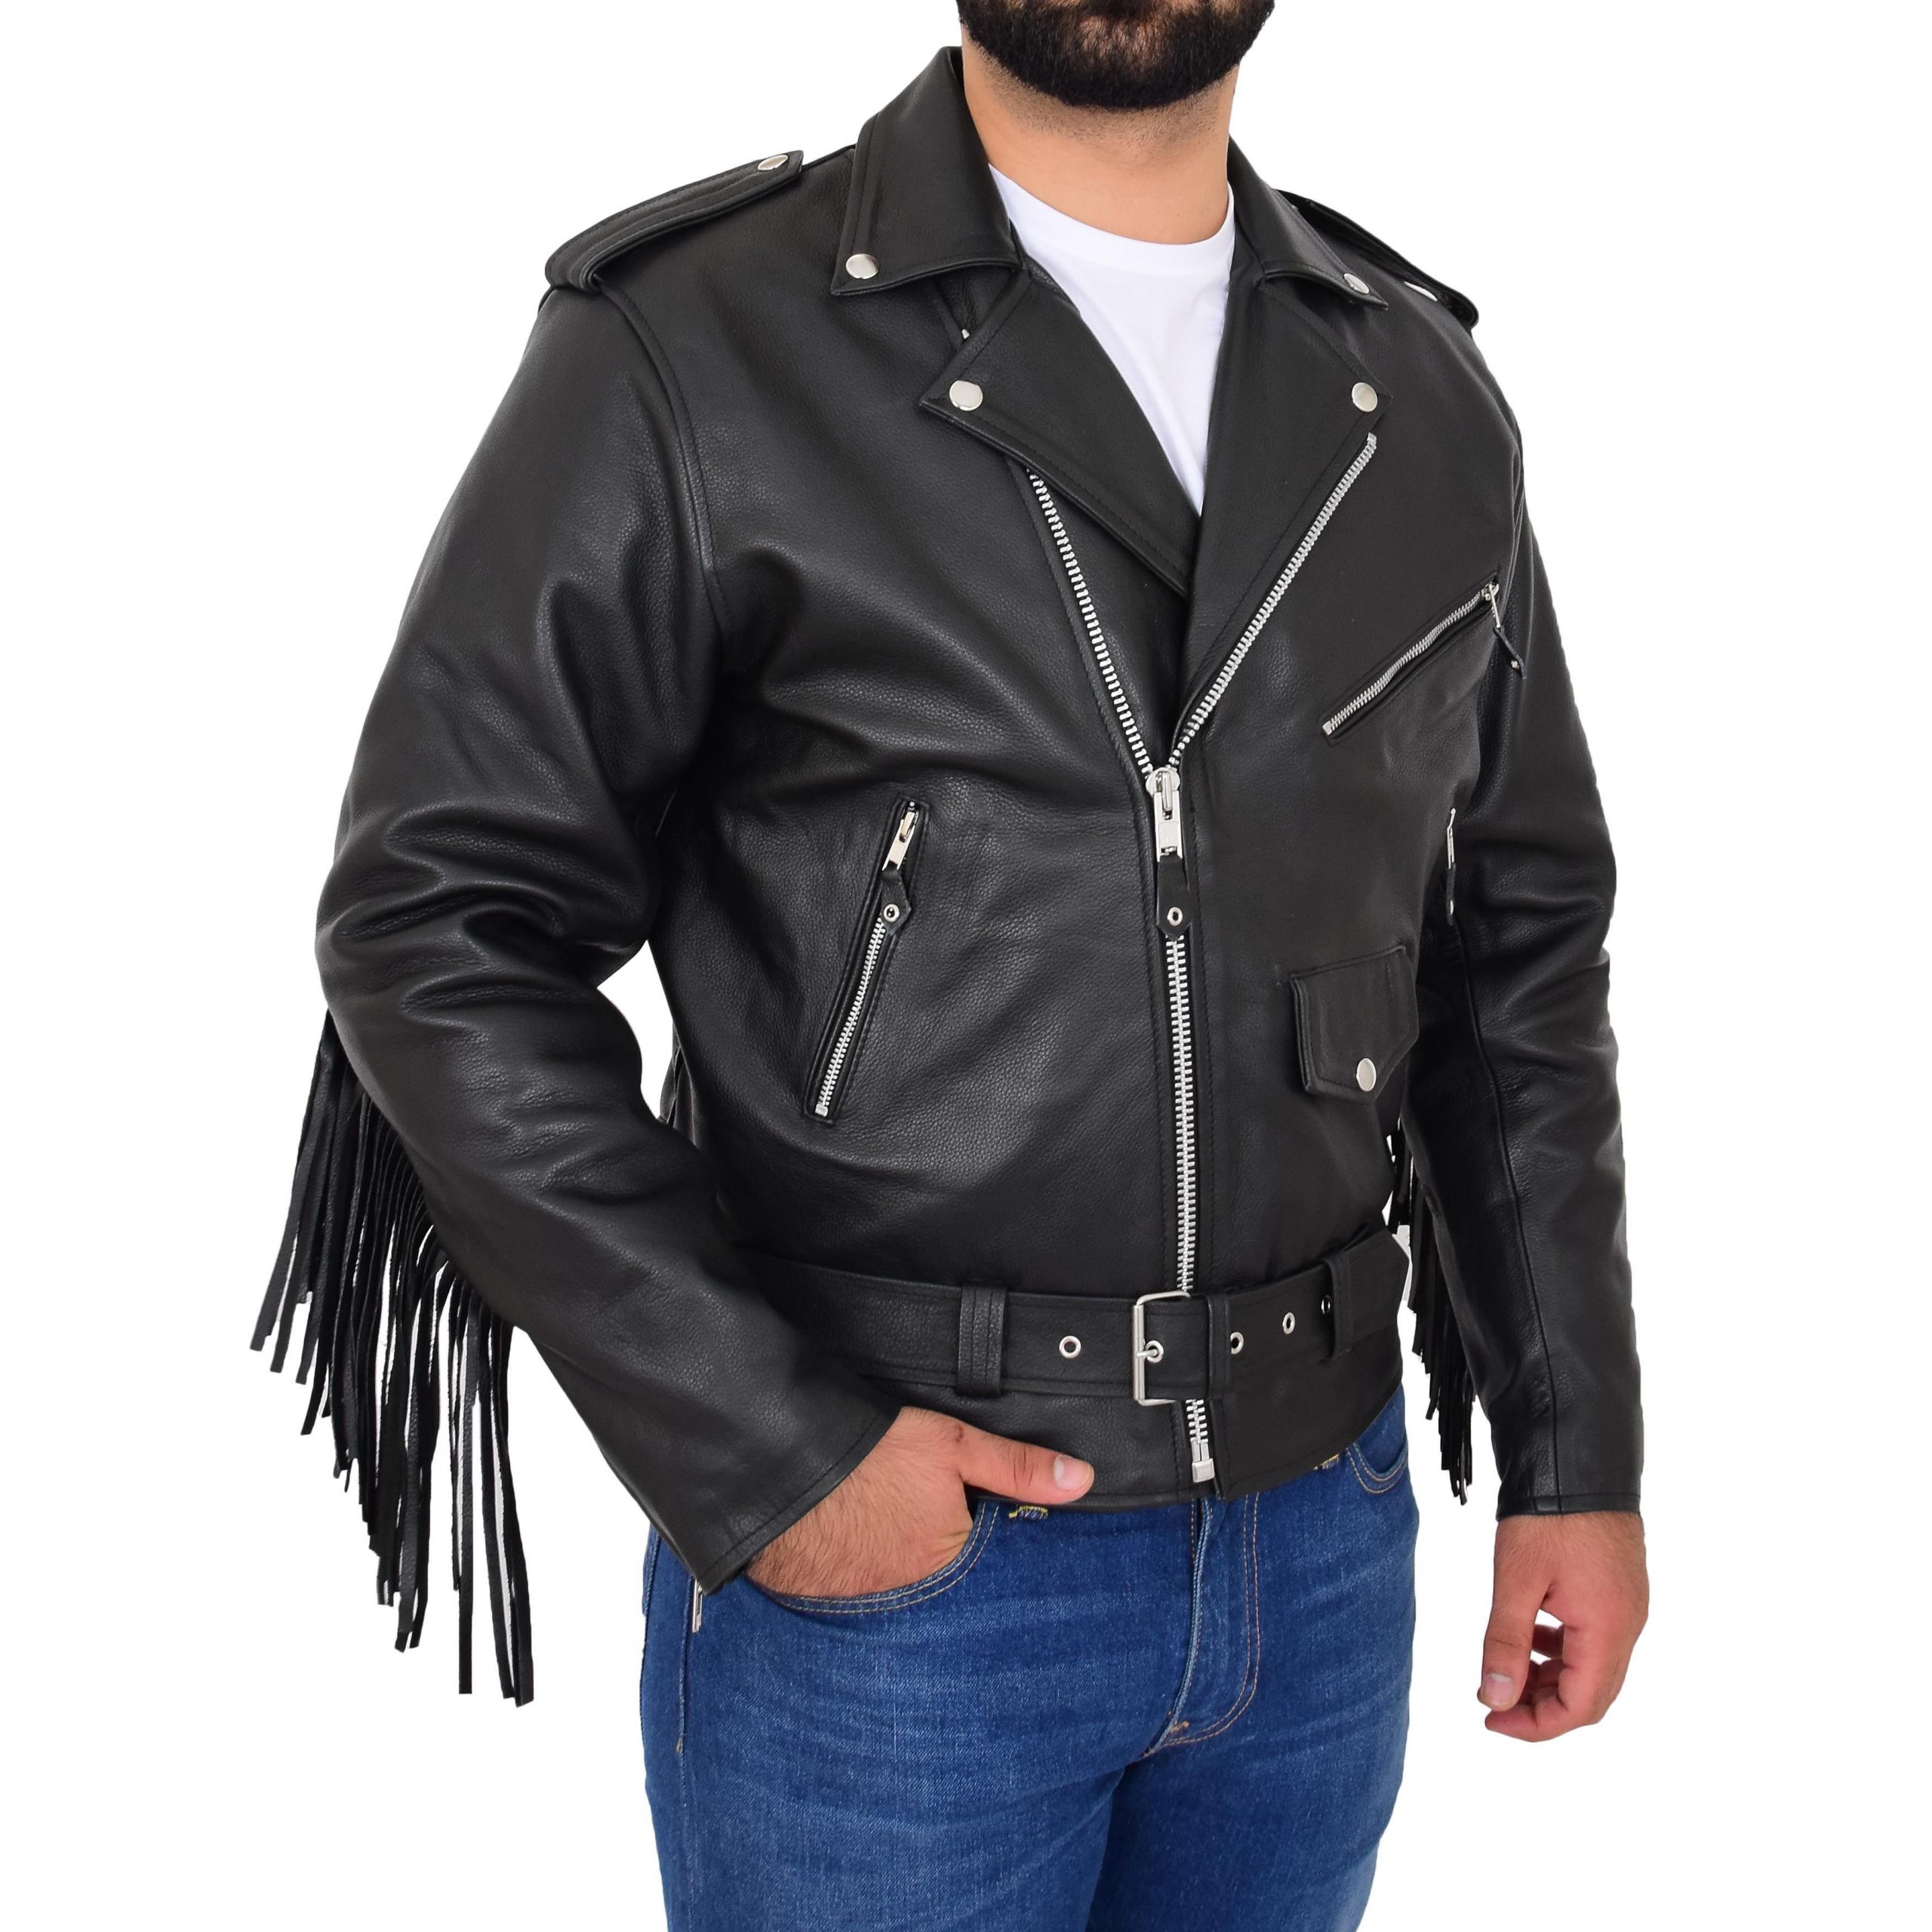 Mens Biker Brando Leather Jacket With Fringes Wayne Black Bikers Leather Jackets